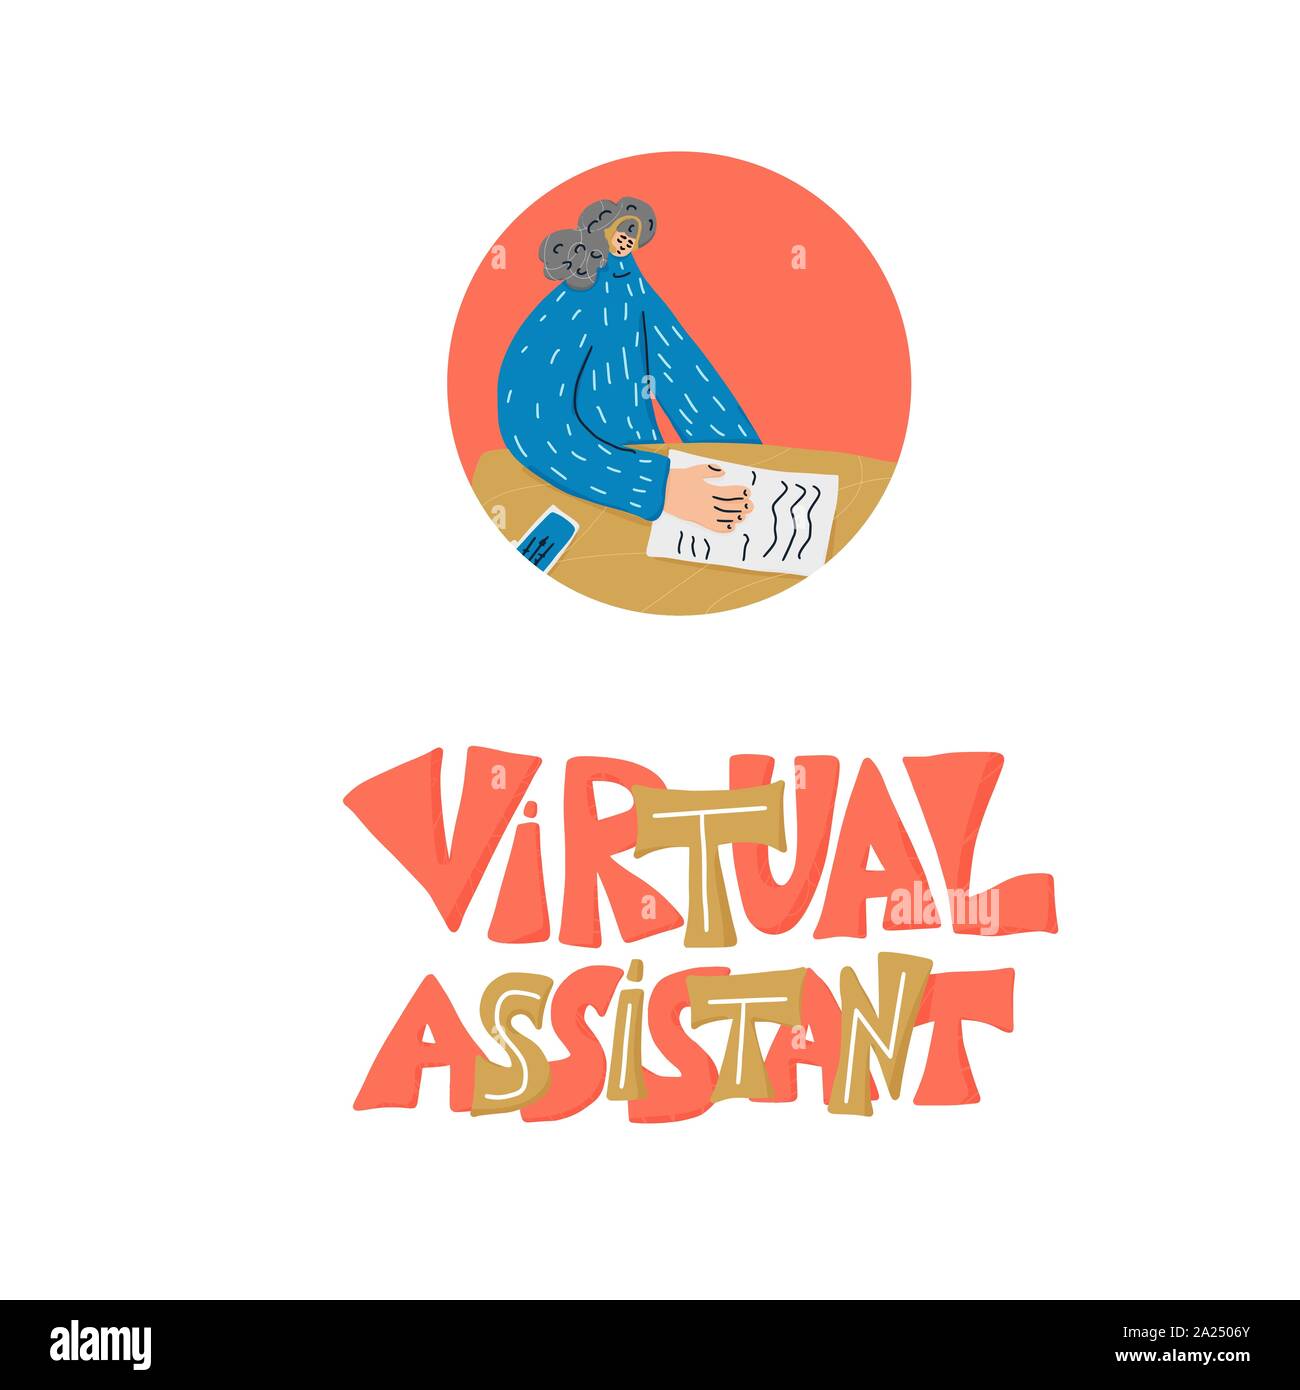 Avatar ảo trợ lý cá nhân năm 2024 sẽ giúp bạn trong mọi việc từ lập kế hoạch, quản lý công việc, tìm kiếm thông tin đến giải trí. Với tính năng nhận diện giọng nói và trí tuệ nhân tạo tiên tiến, avatar trợ lý cá nhân sẽ là người bạn đồng hành đắc lực và tin cậy của bạn trong cuộc sống. Hãy khám phá và cùng trải nghiệm với Virtual Assistant Avatar 2024!